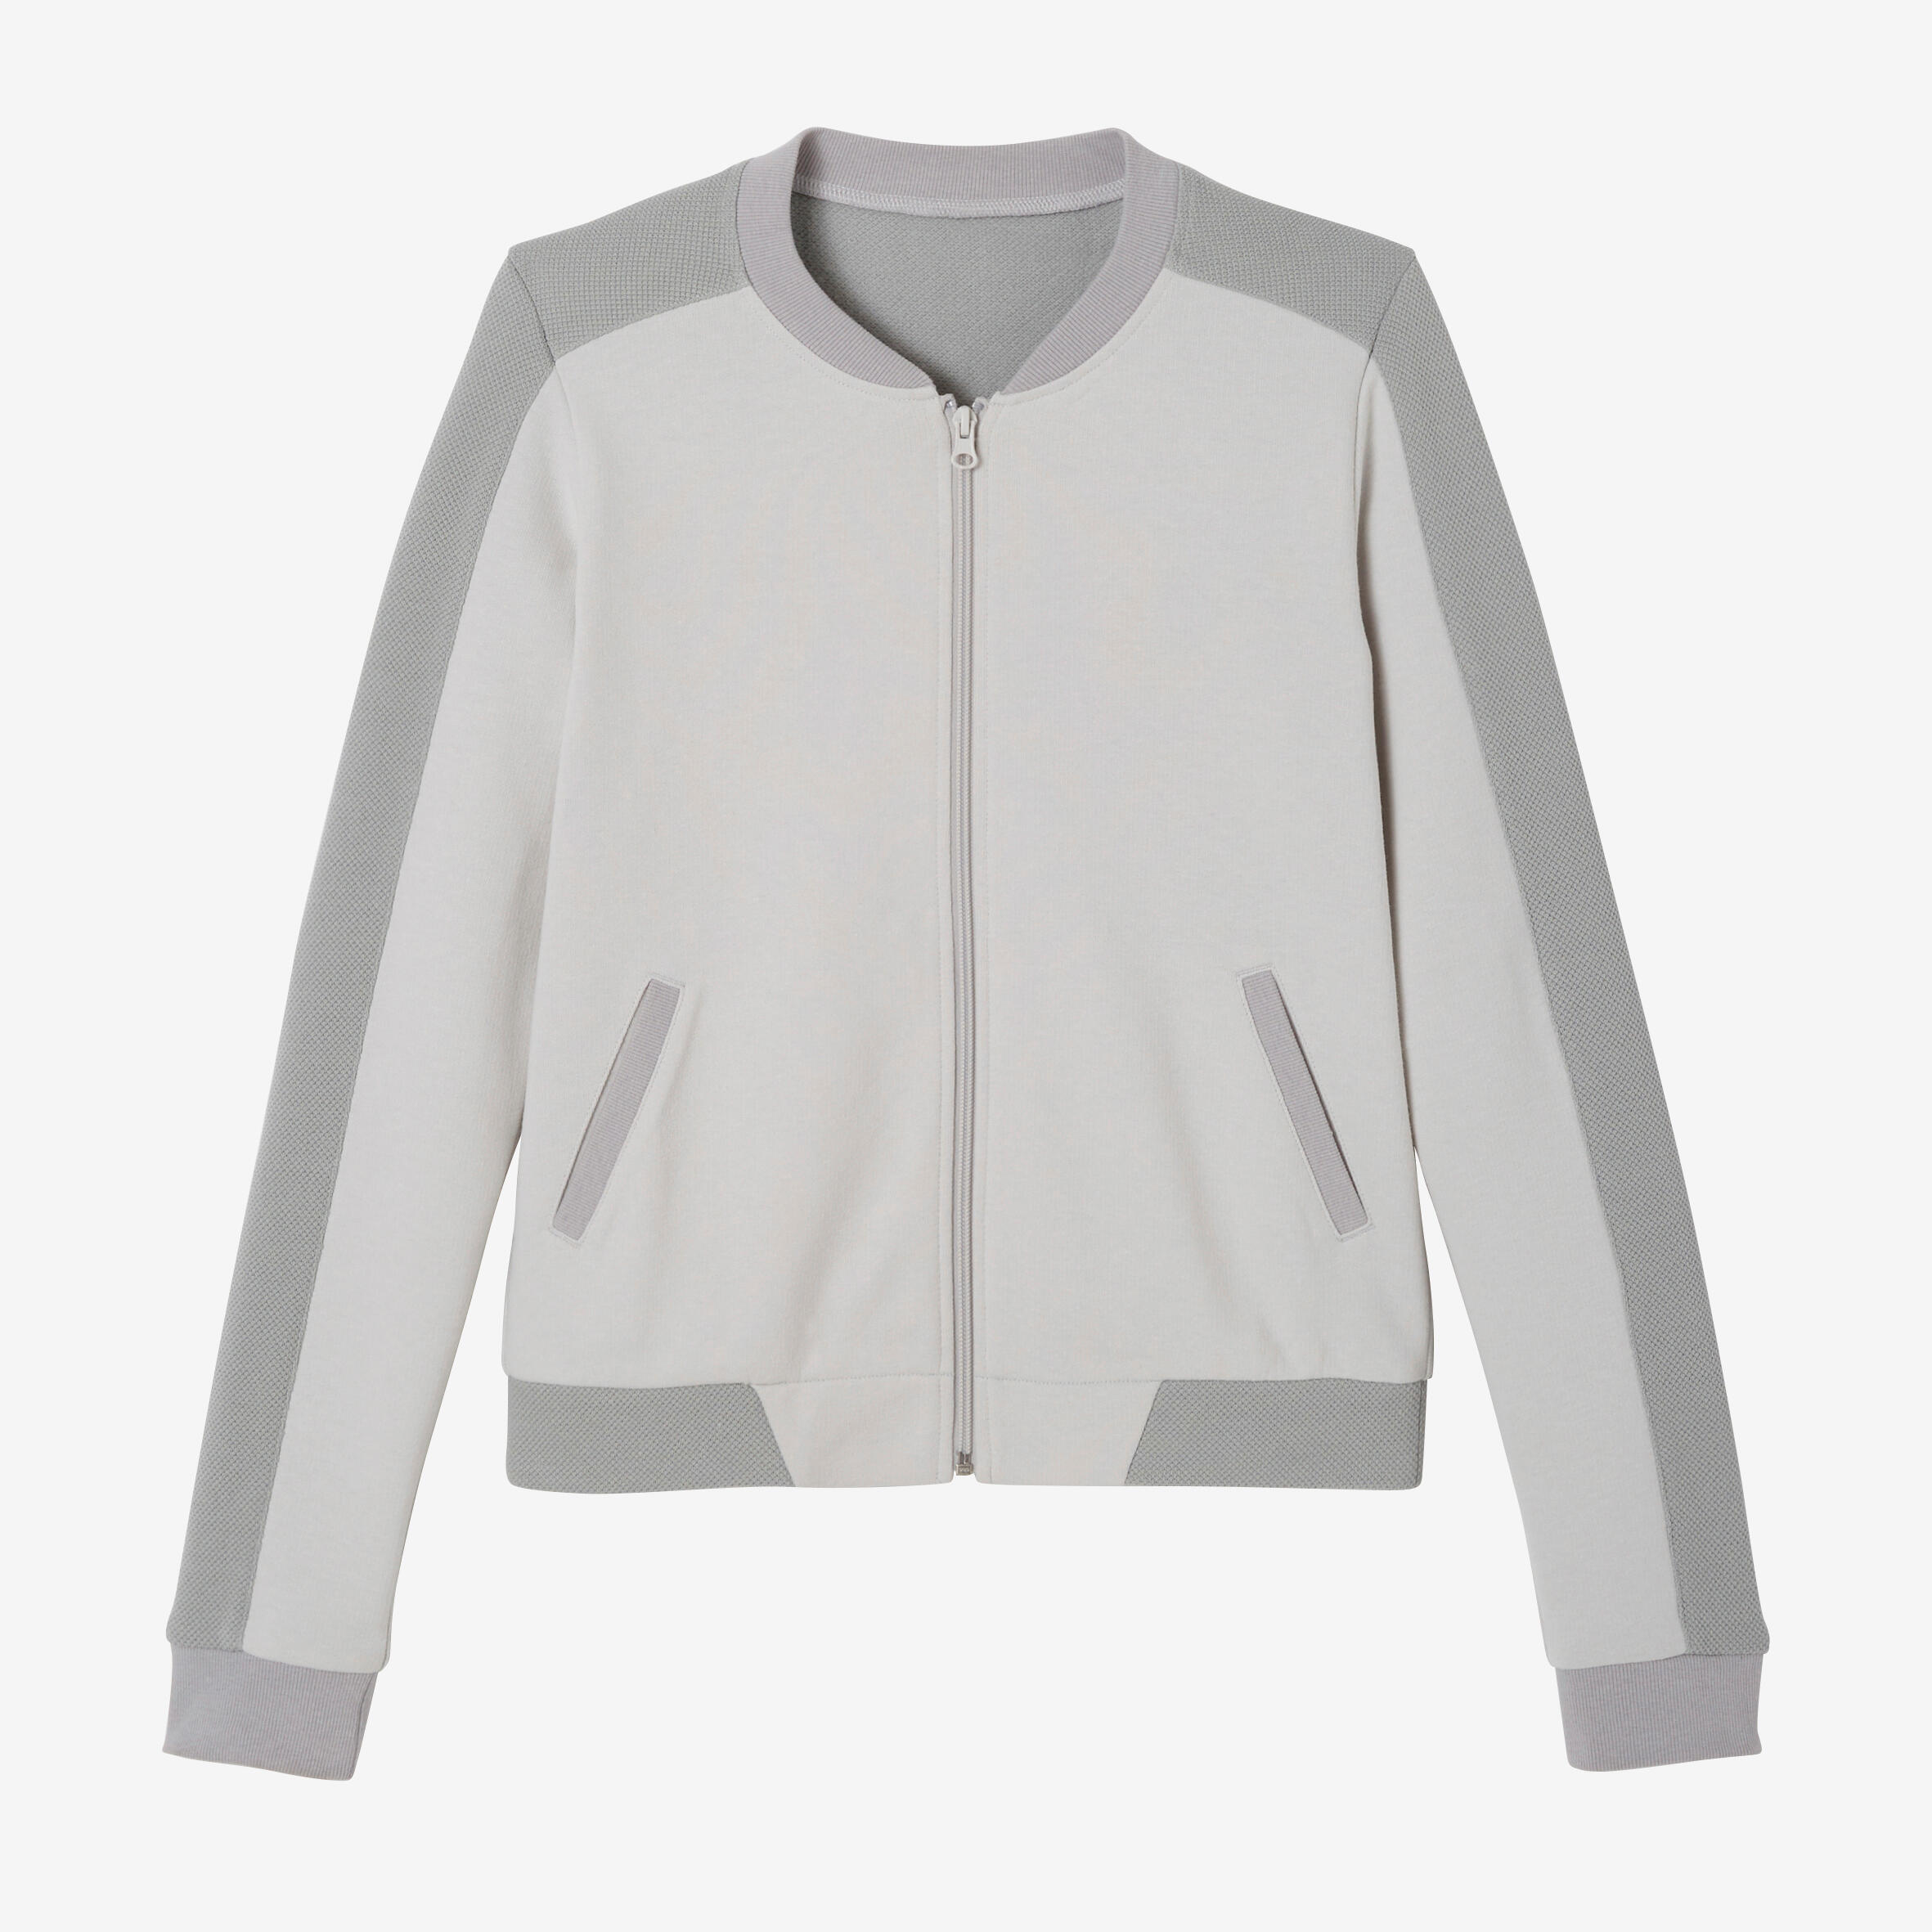 Women's Zip-Up Fitness Sweatshirt 520 - Light Grey 7/7